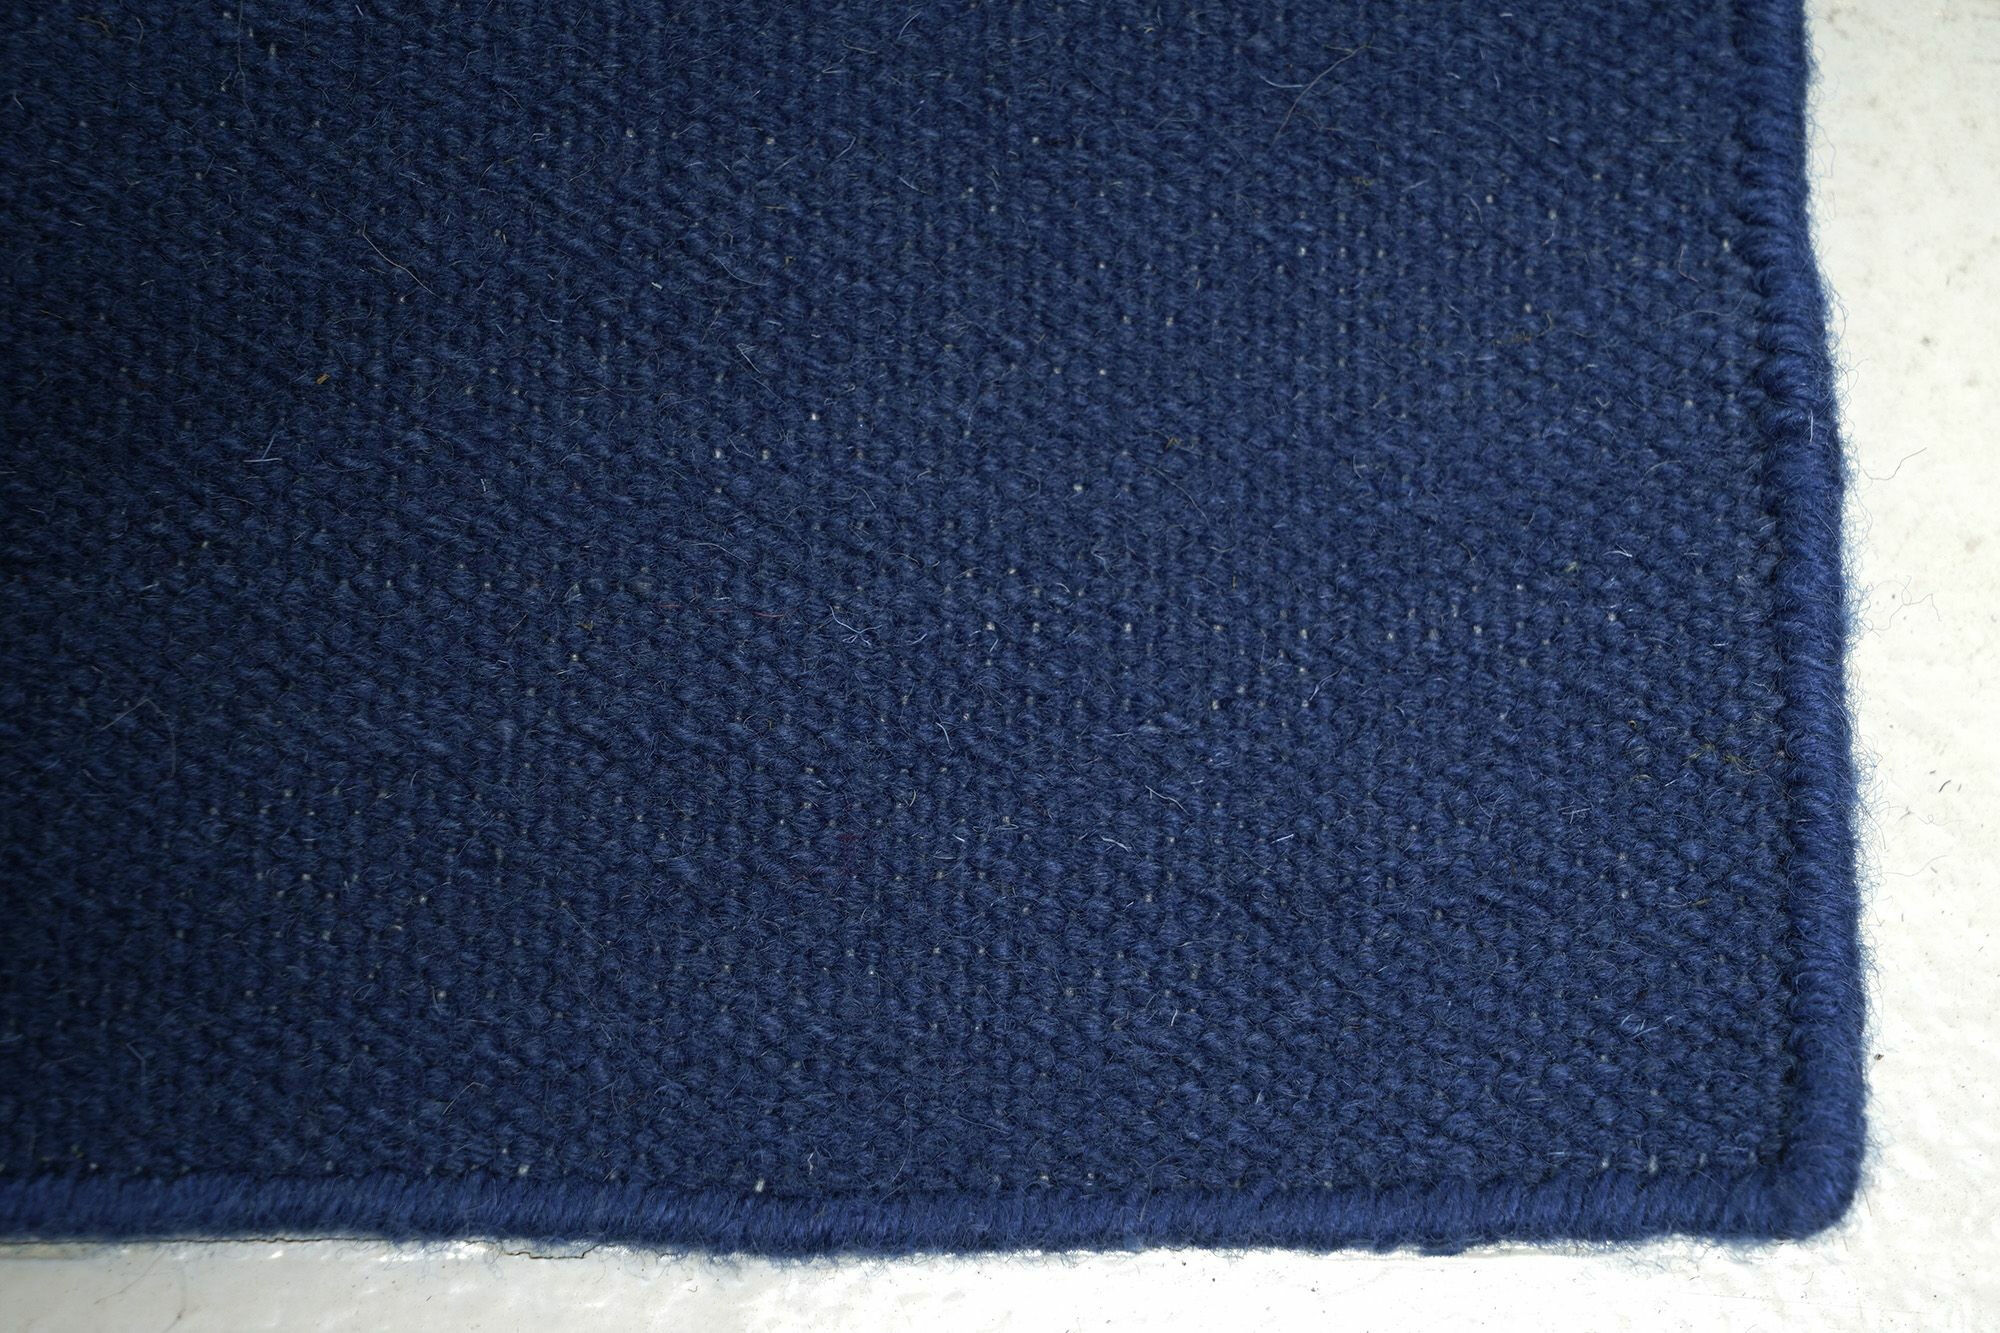 Teppich 220x300 Kilim Zoe Sool Multicolor Blau Grau Rot Gelb 100% Wolle